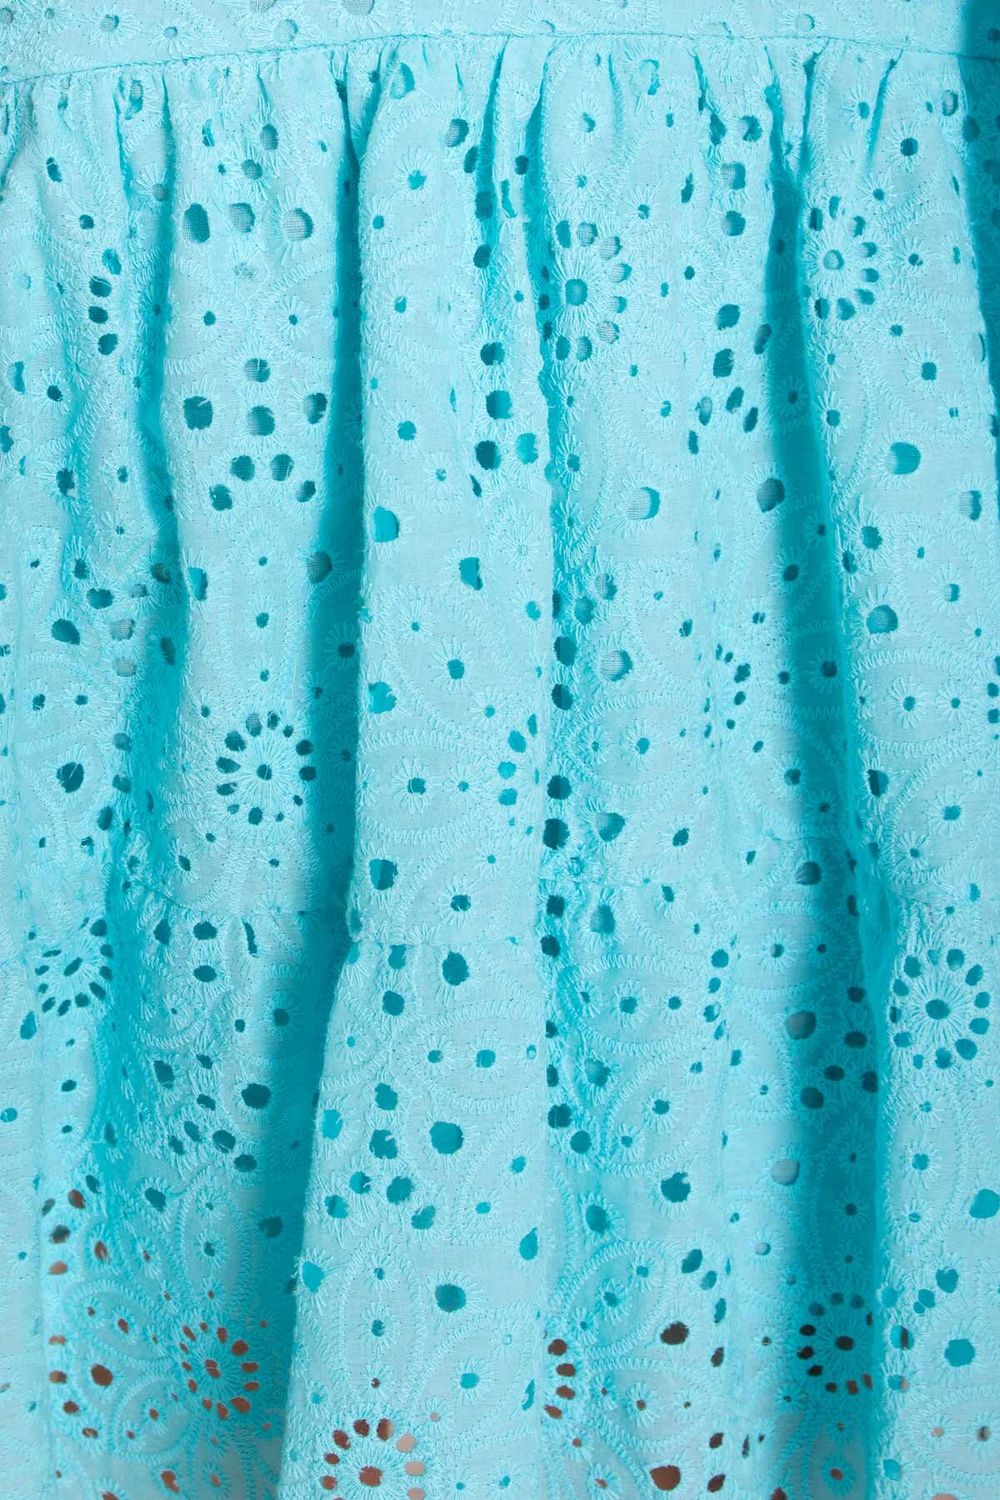 Летнее платье оверсайз хлопковое из прошвы голубое - фото